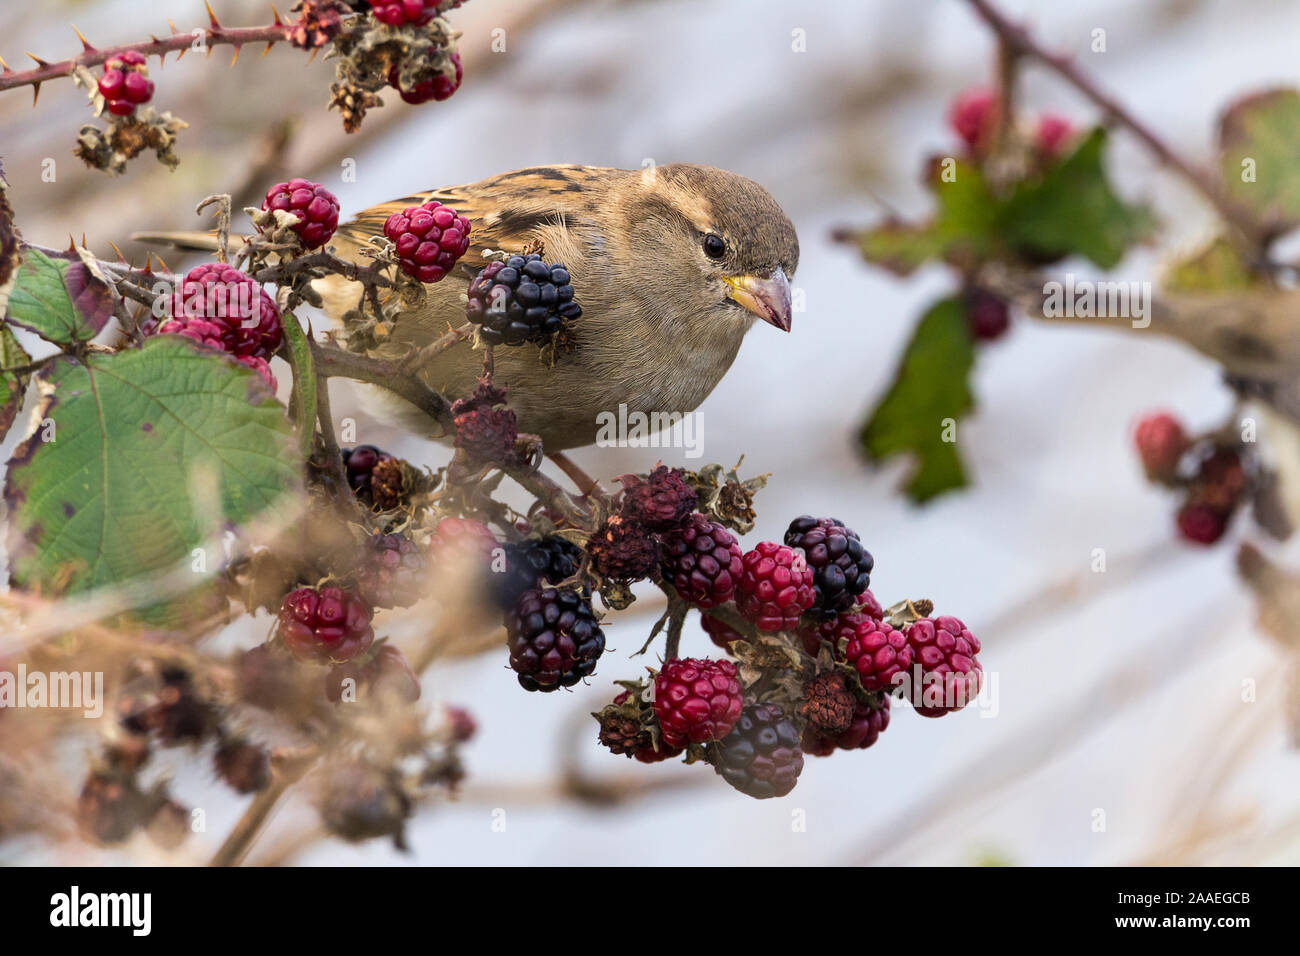 Sparrow Passer domesticus femelle sur les mûres d'hiver, le bec épais a rayé le dos, les parties sous-jacentes et les joues pâles, couronne brun pâle bande pâle derrière les yeux Banque D'Images